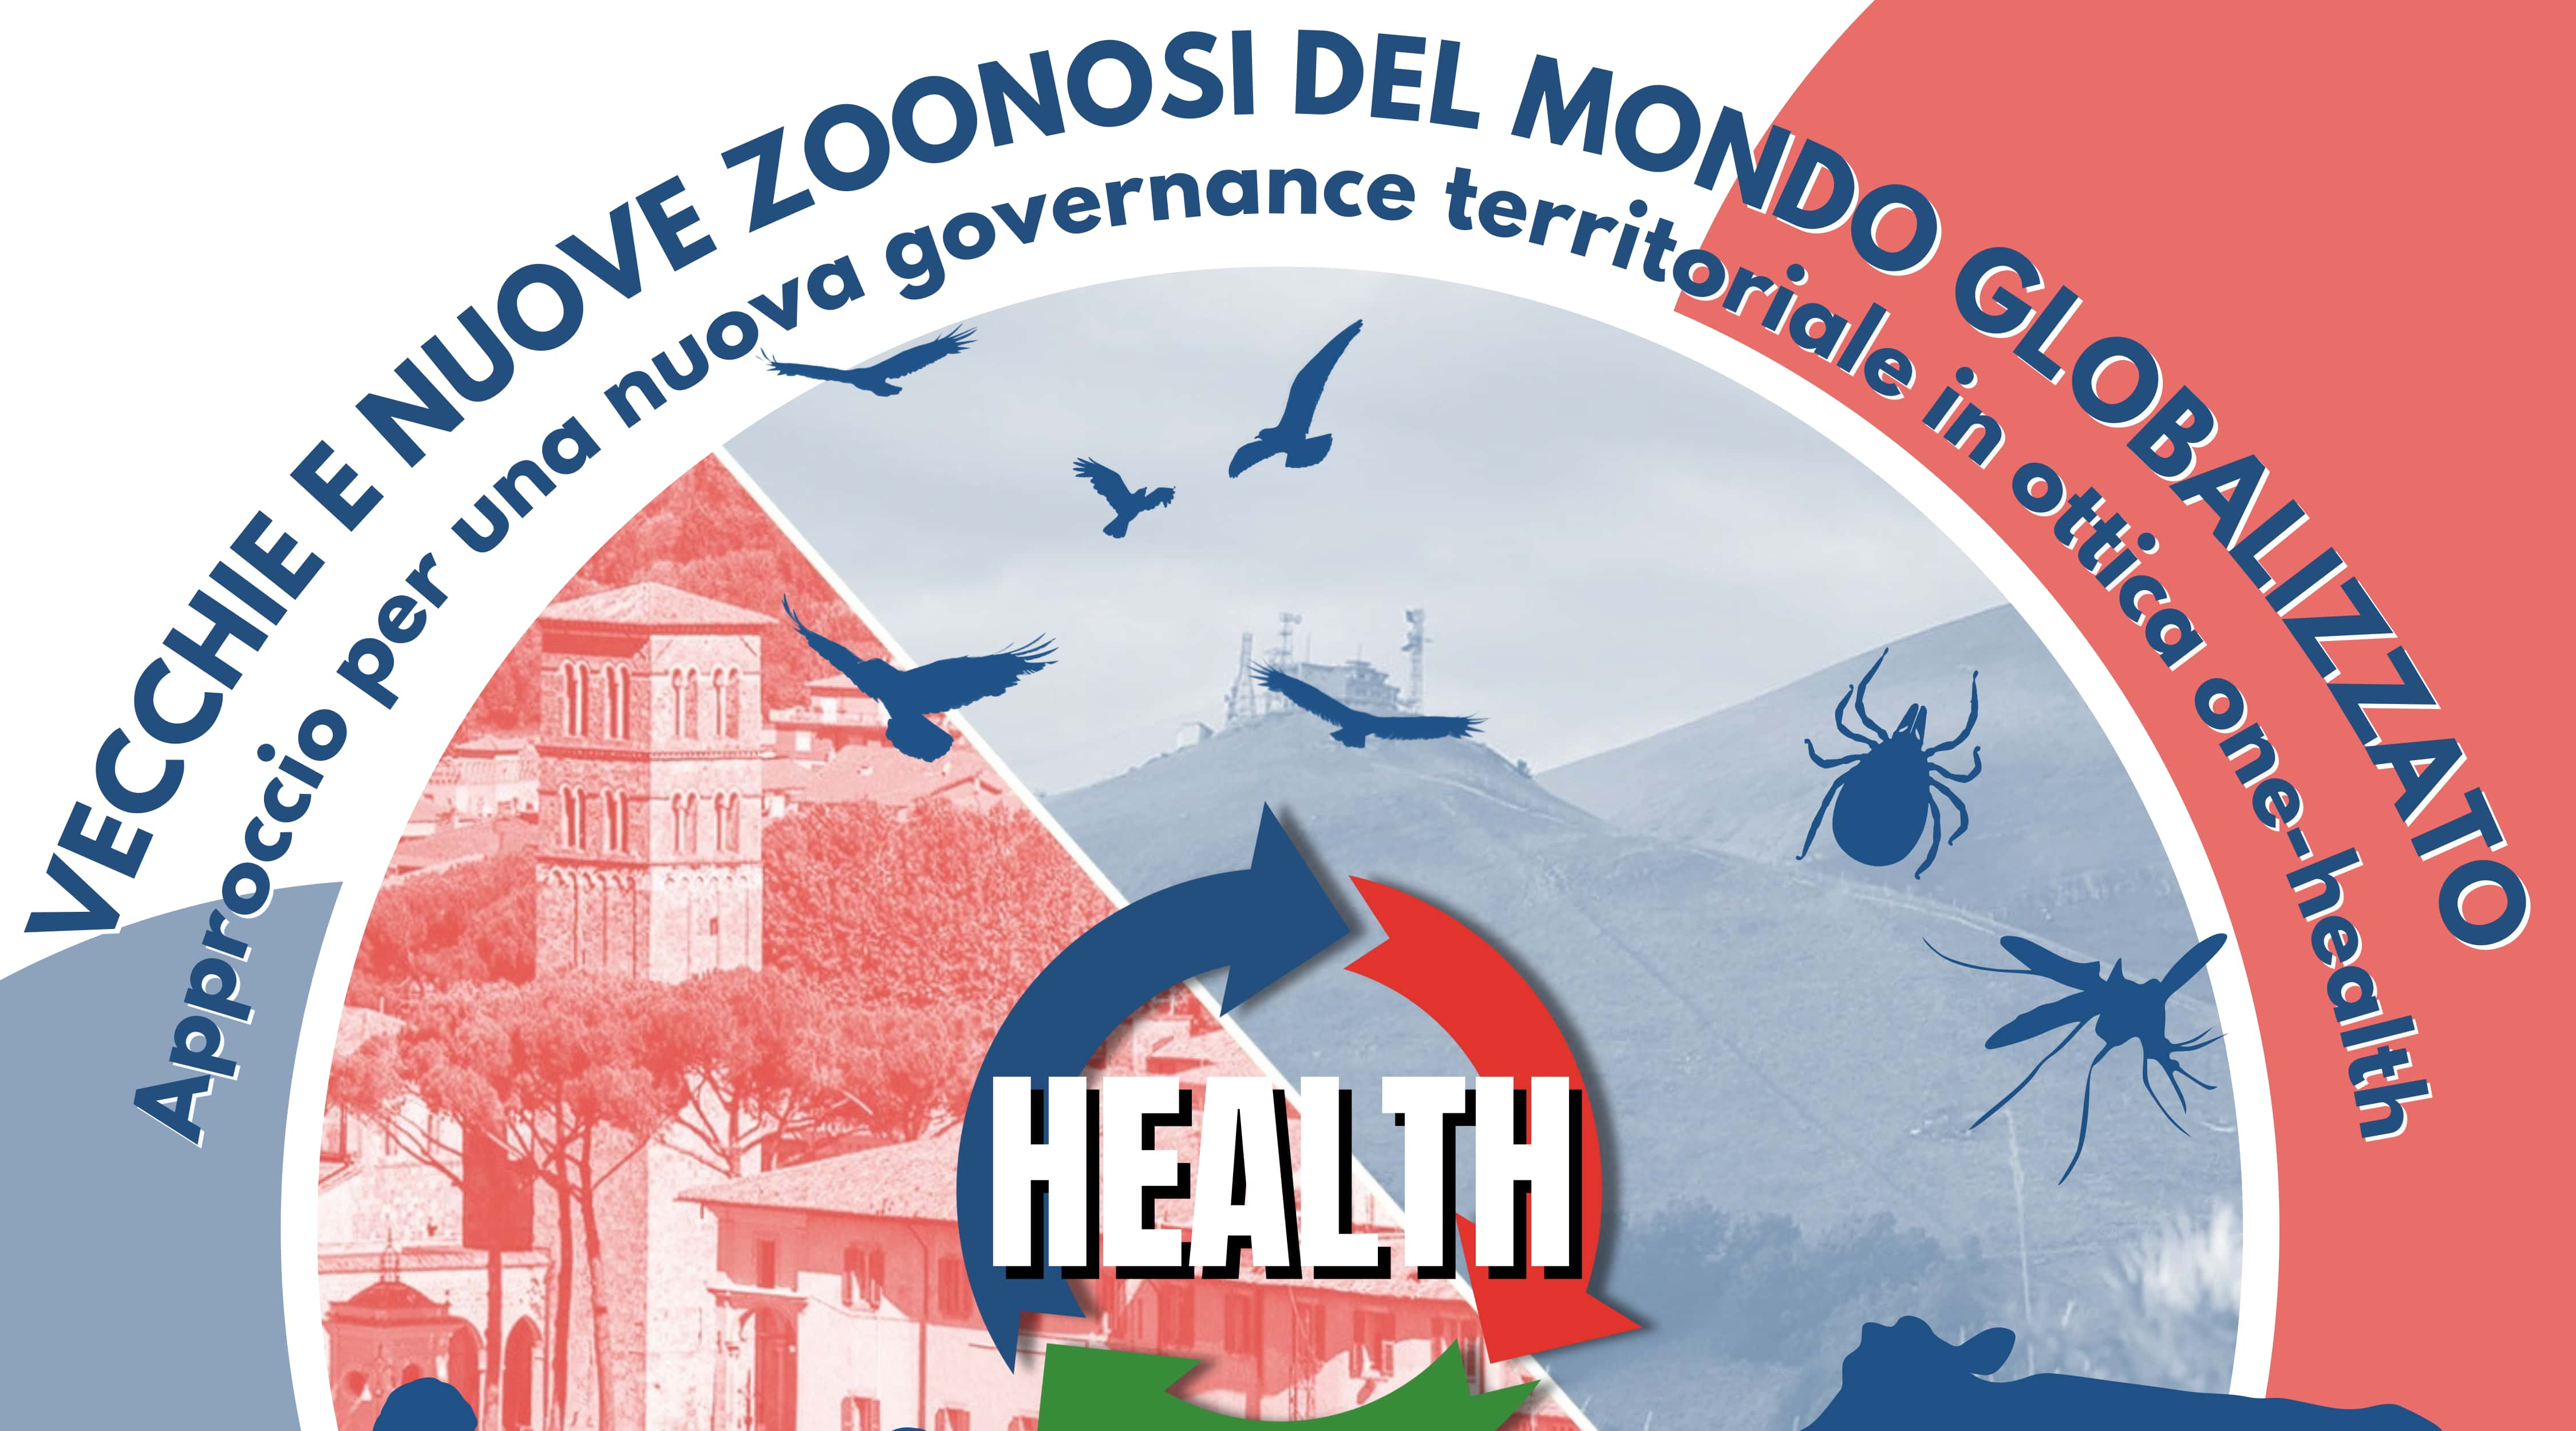 Clicca per accedere all'articolo Corso "Vecchie e nuove Zoonosi del mondo globalizzato: approccio per una nuova governance territoriale in ottica One-health"